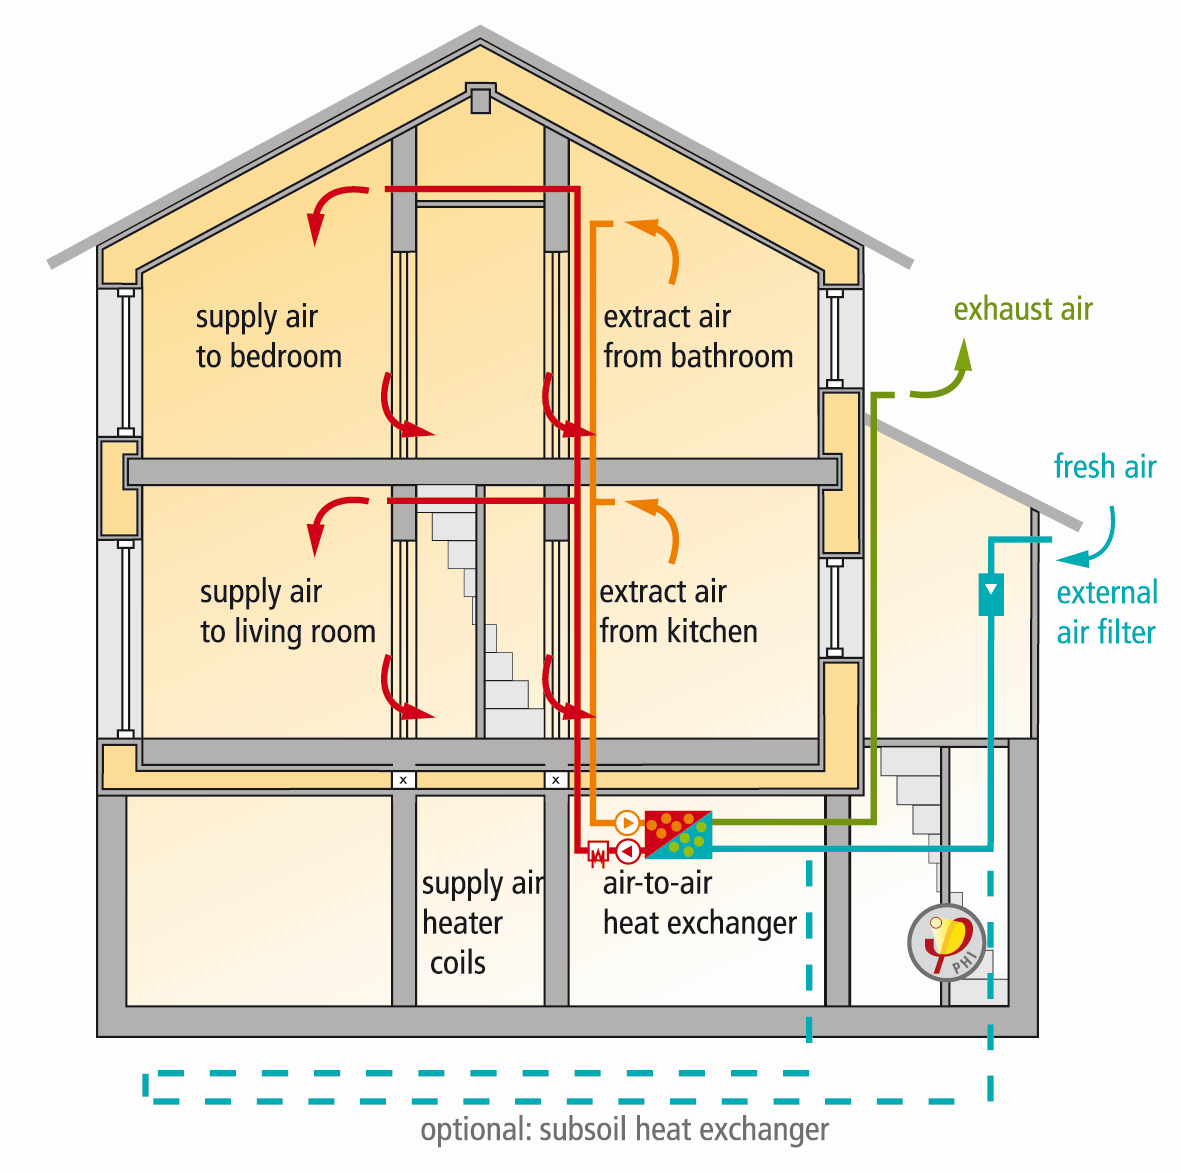 Ενεργειακός Κλιματισμός Θερμομονωμένη αεροστεγανή κατασκευή, σωστός εξαερισμός Η ενεργειακή απόδοση δεν μπορεί να θεωρηθεί δικαιολογία για να μειωθεί το ποσοστό του εξαερισμού.